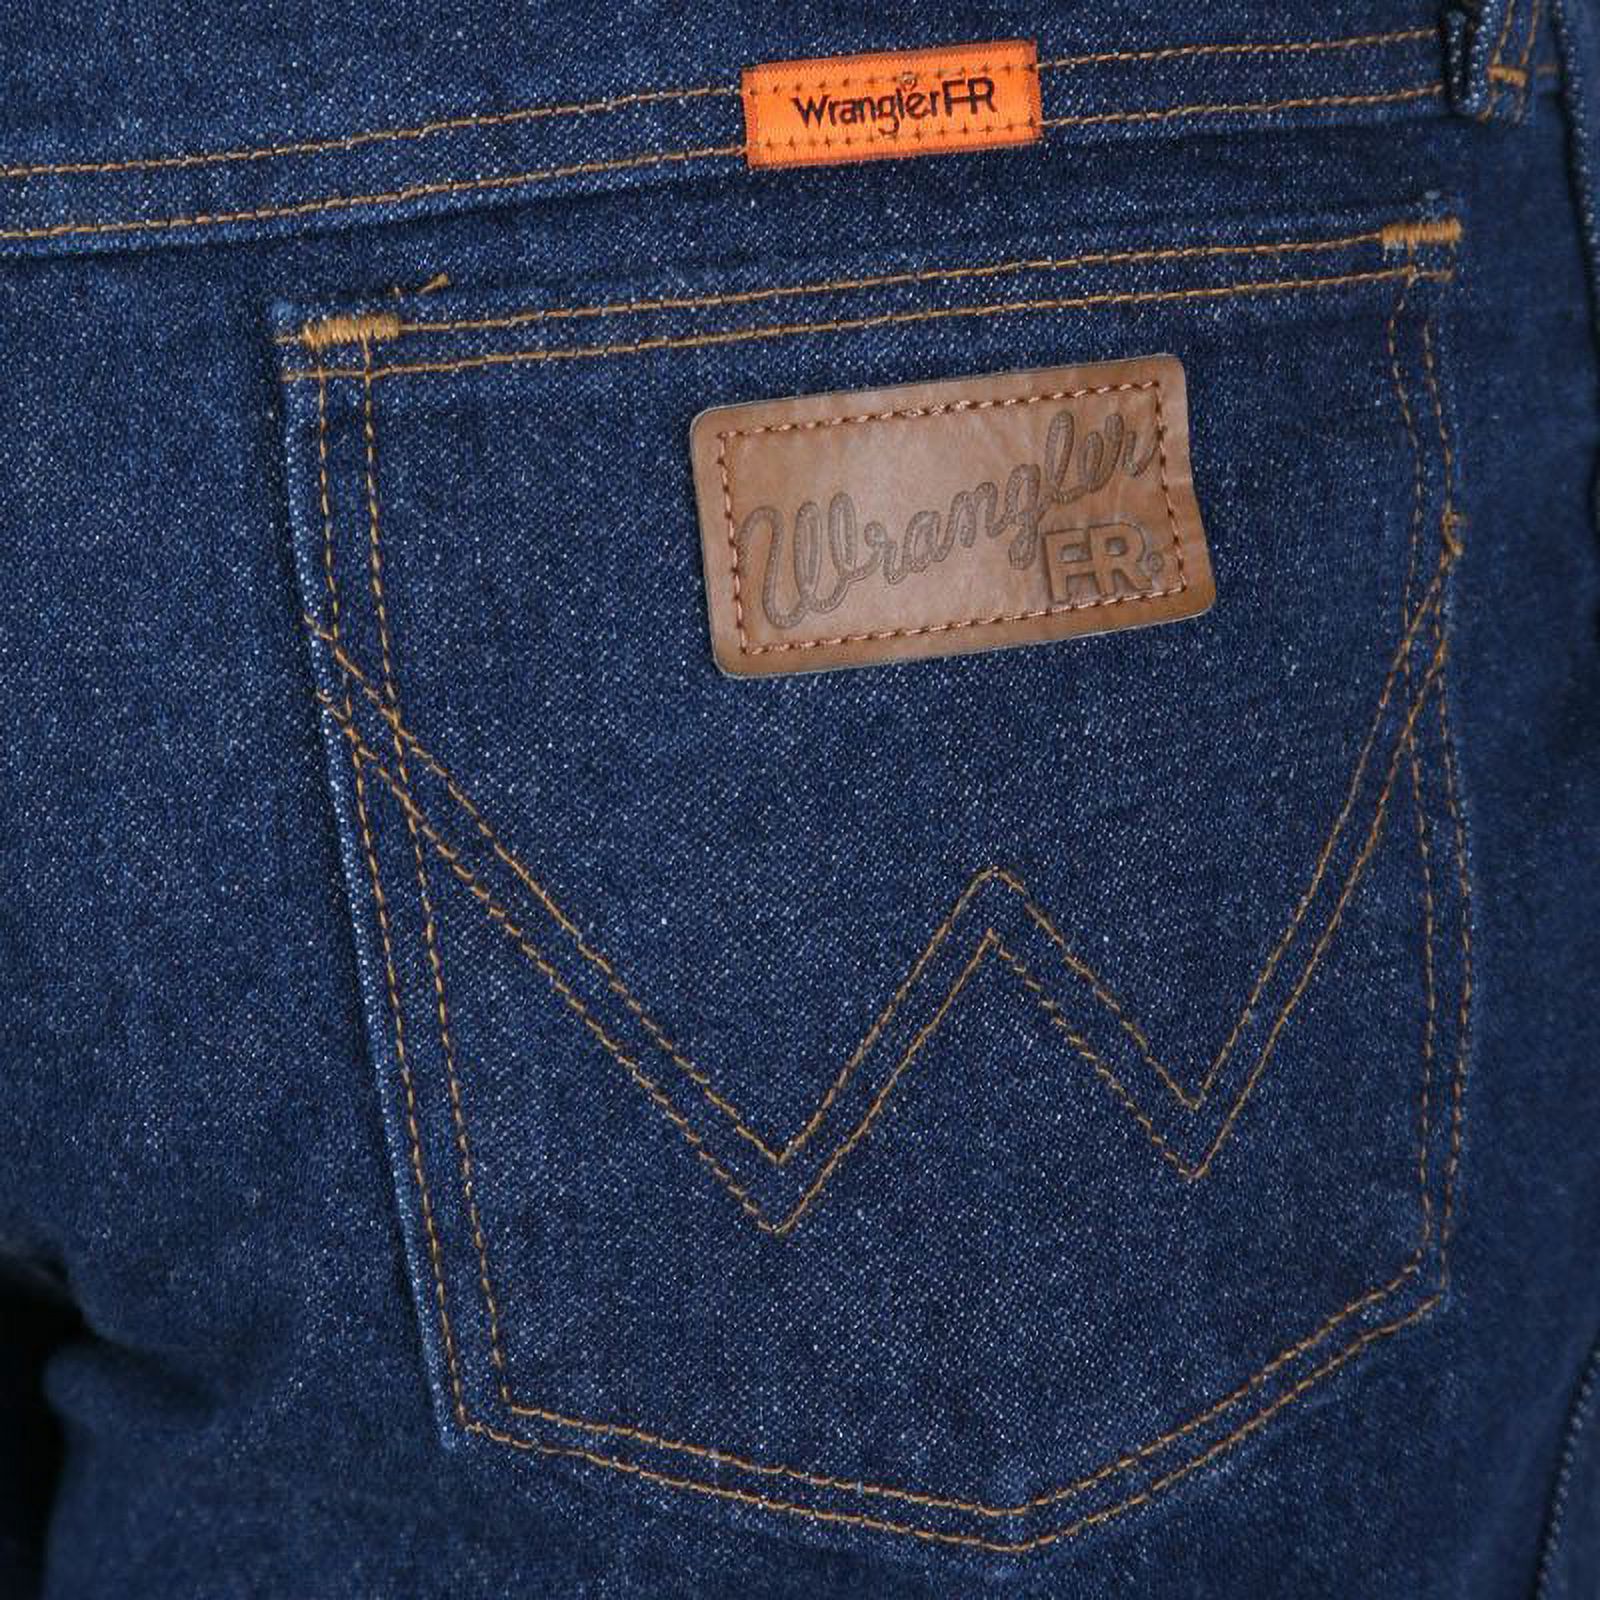 Wrangler Men's Flame Resistant Original Fit Jean - image 2 of 4